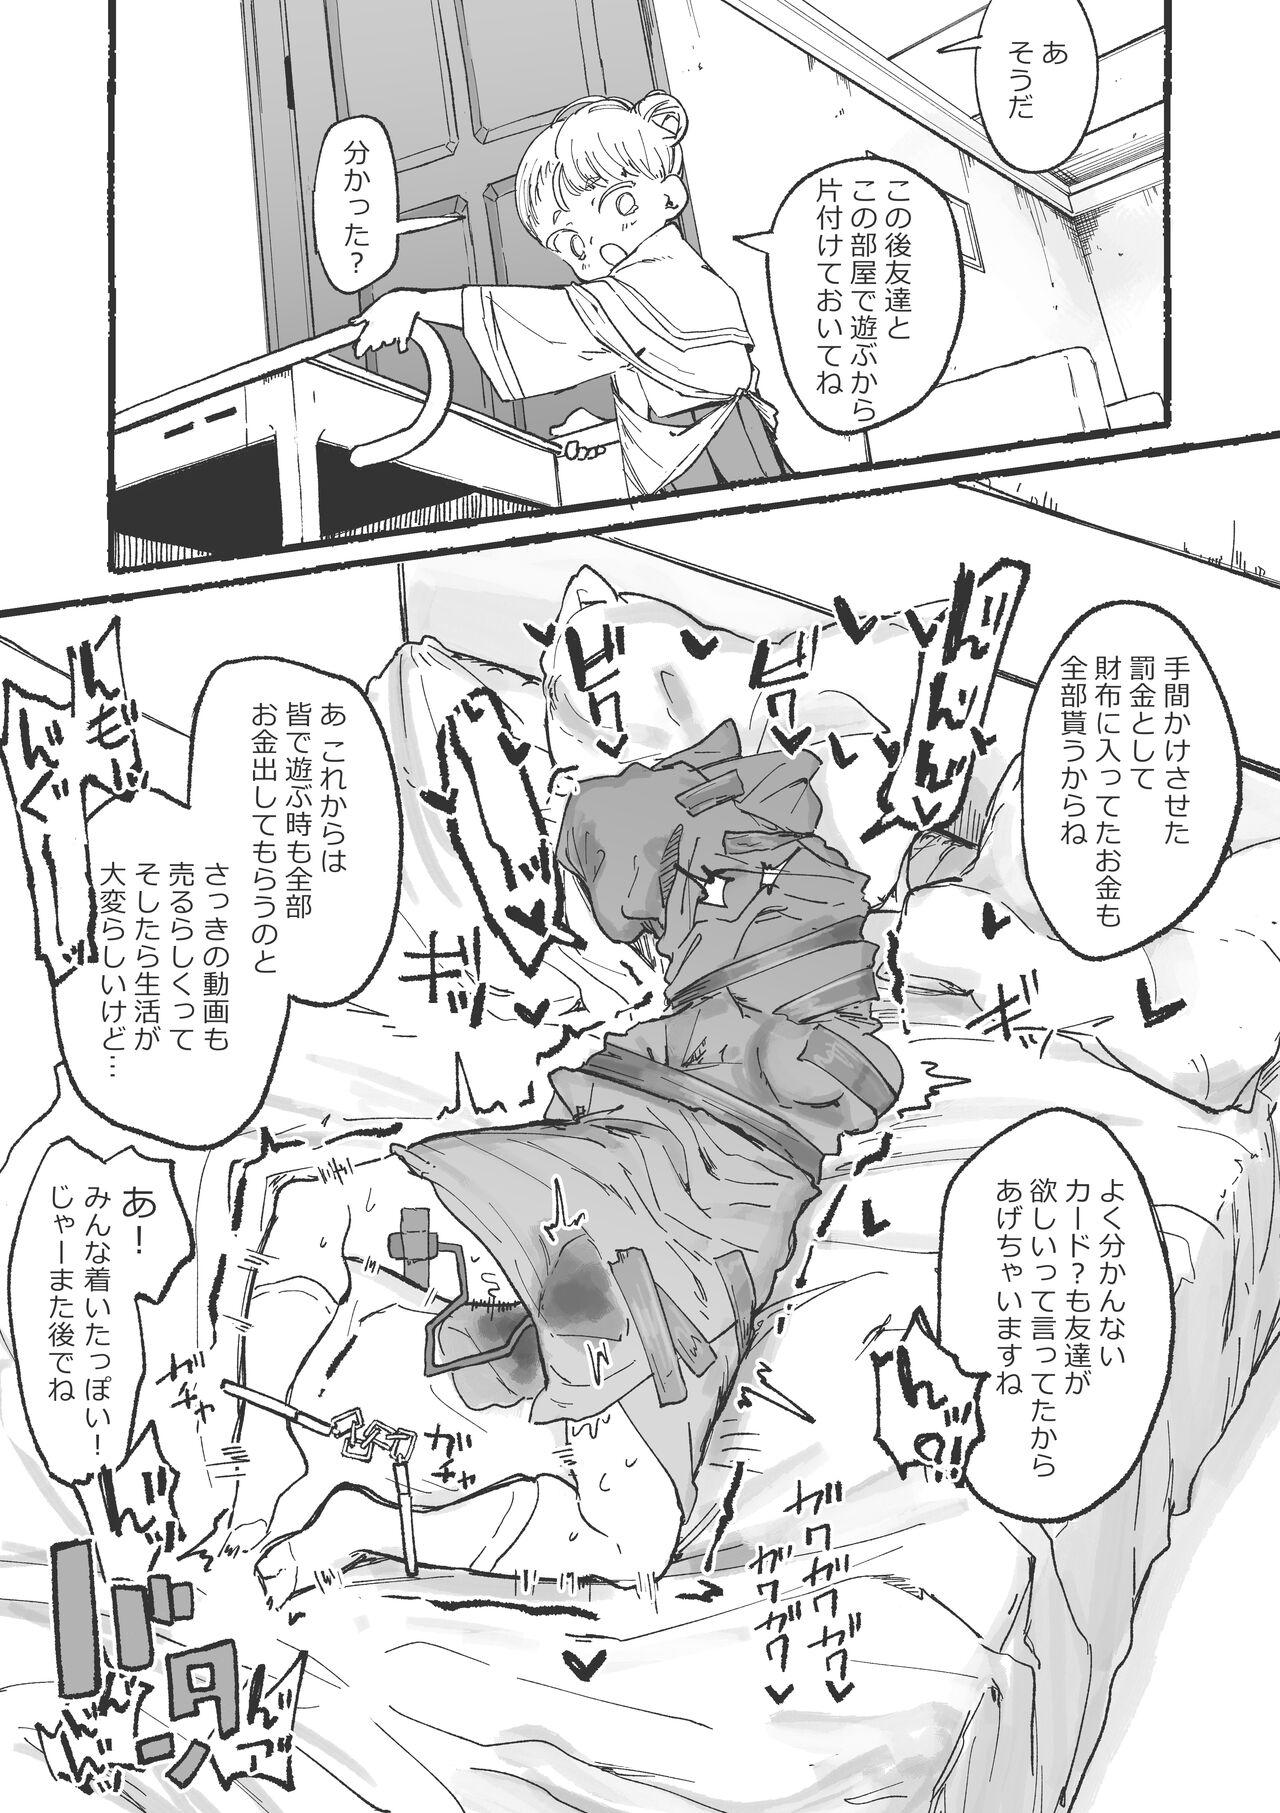 Baile J rei ni ika sa reru fukan 〇 K-chan 1&2 - Original Ass Lick - Page 28